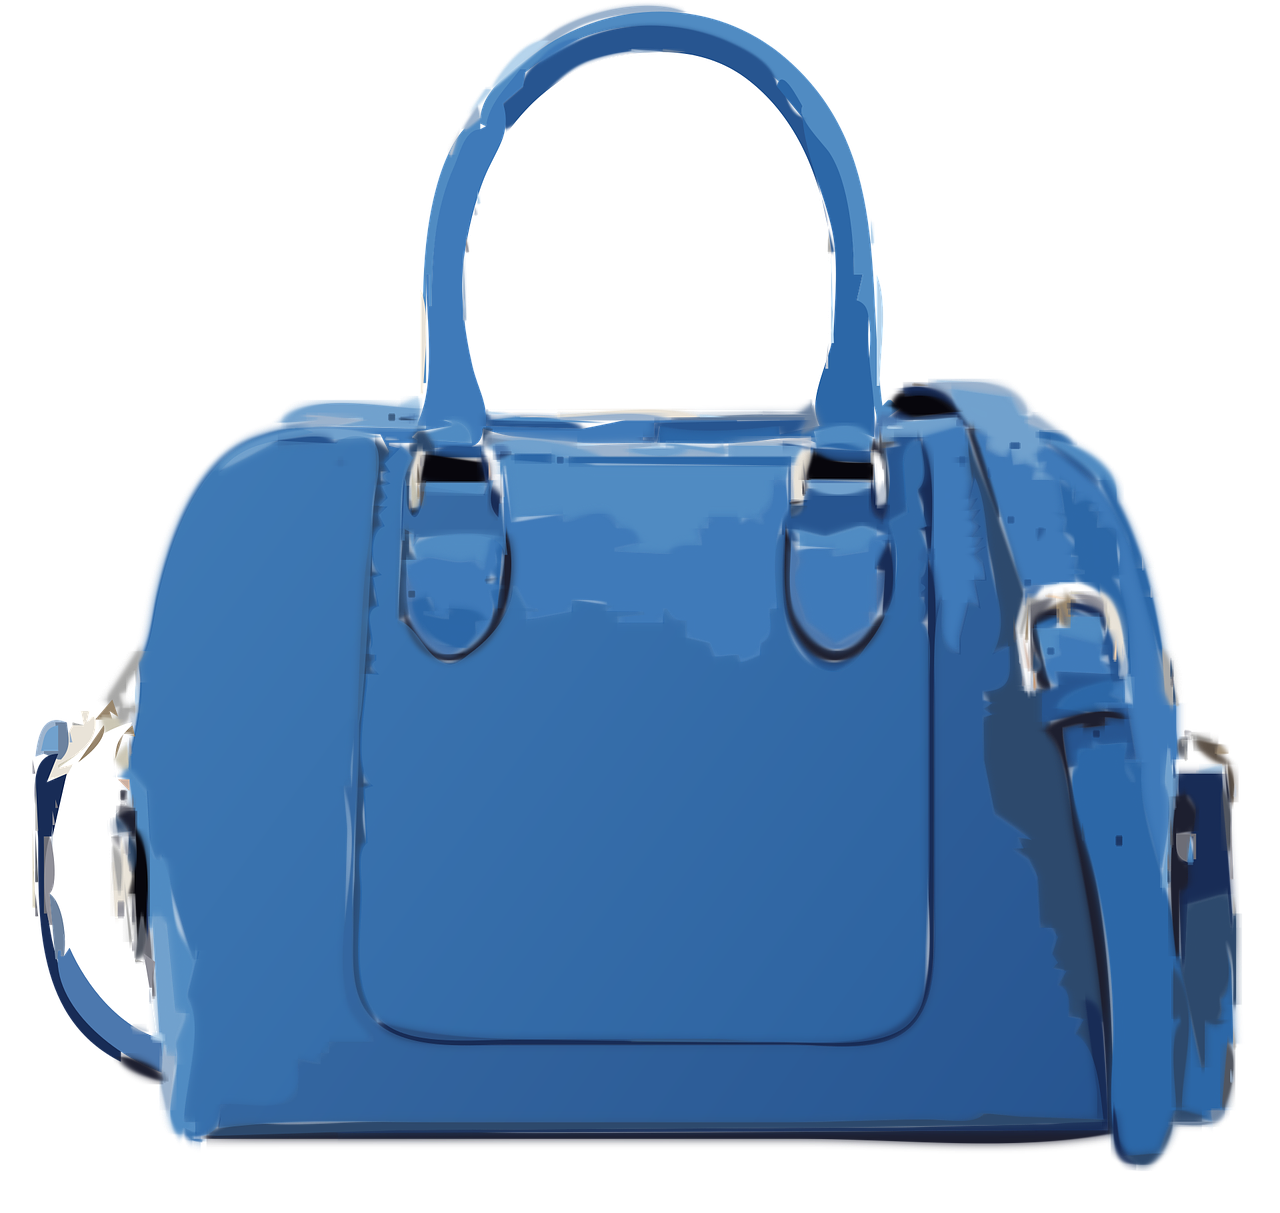 blue handbag no logo free photo